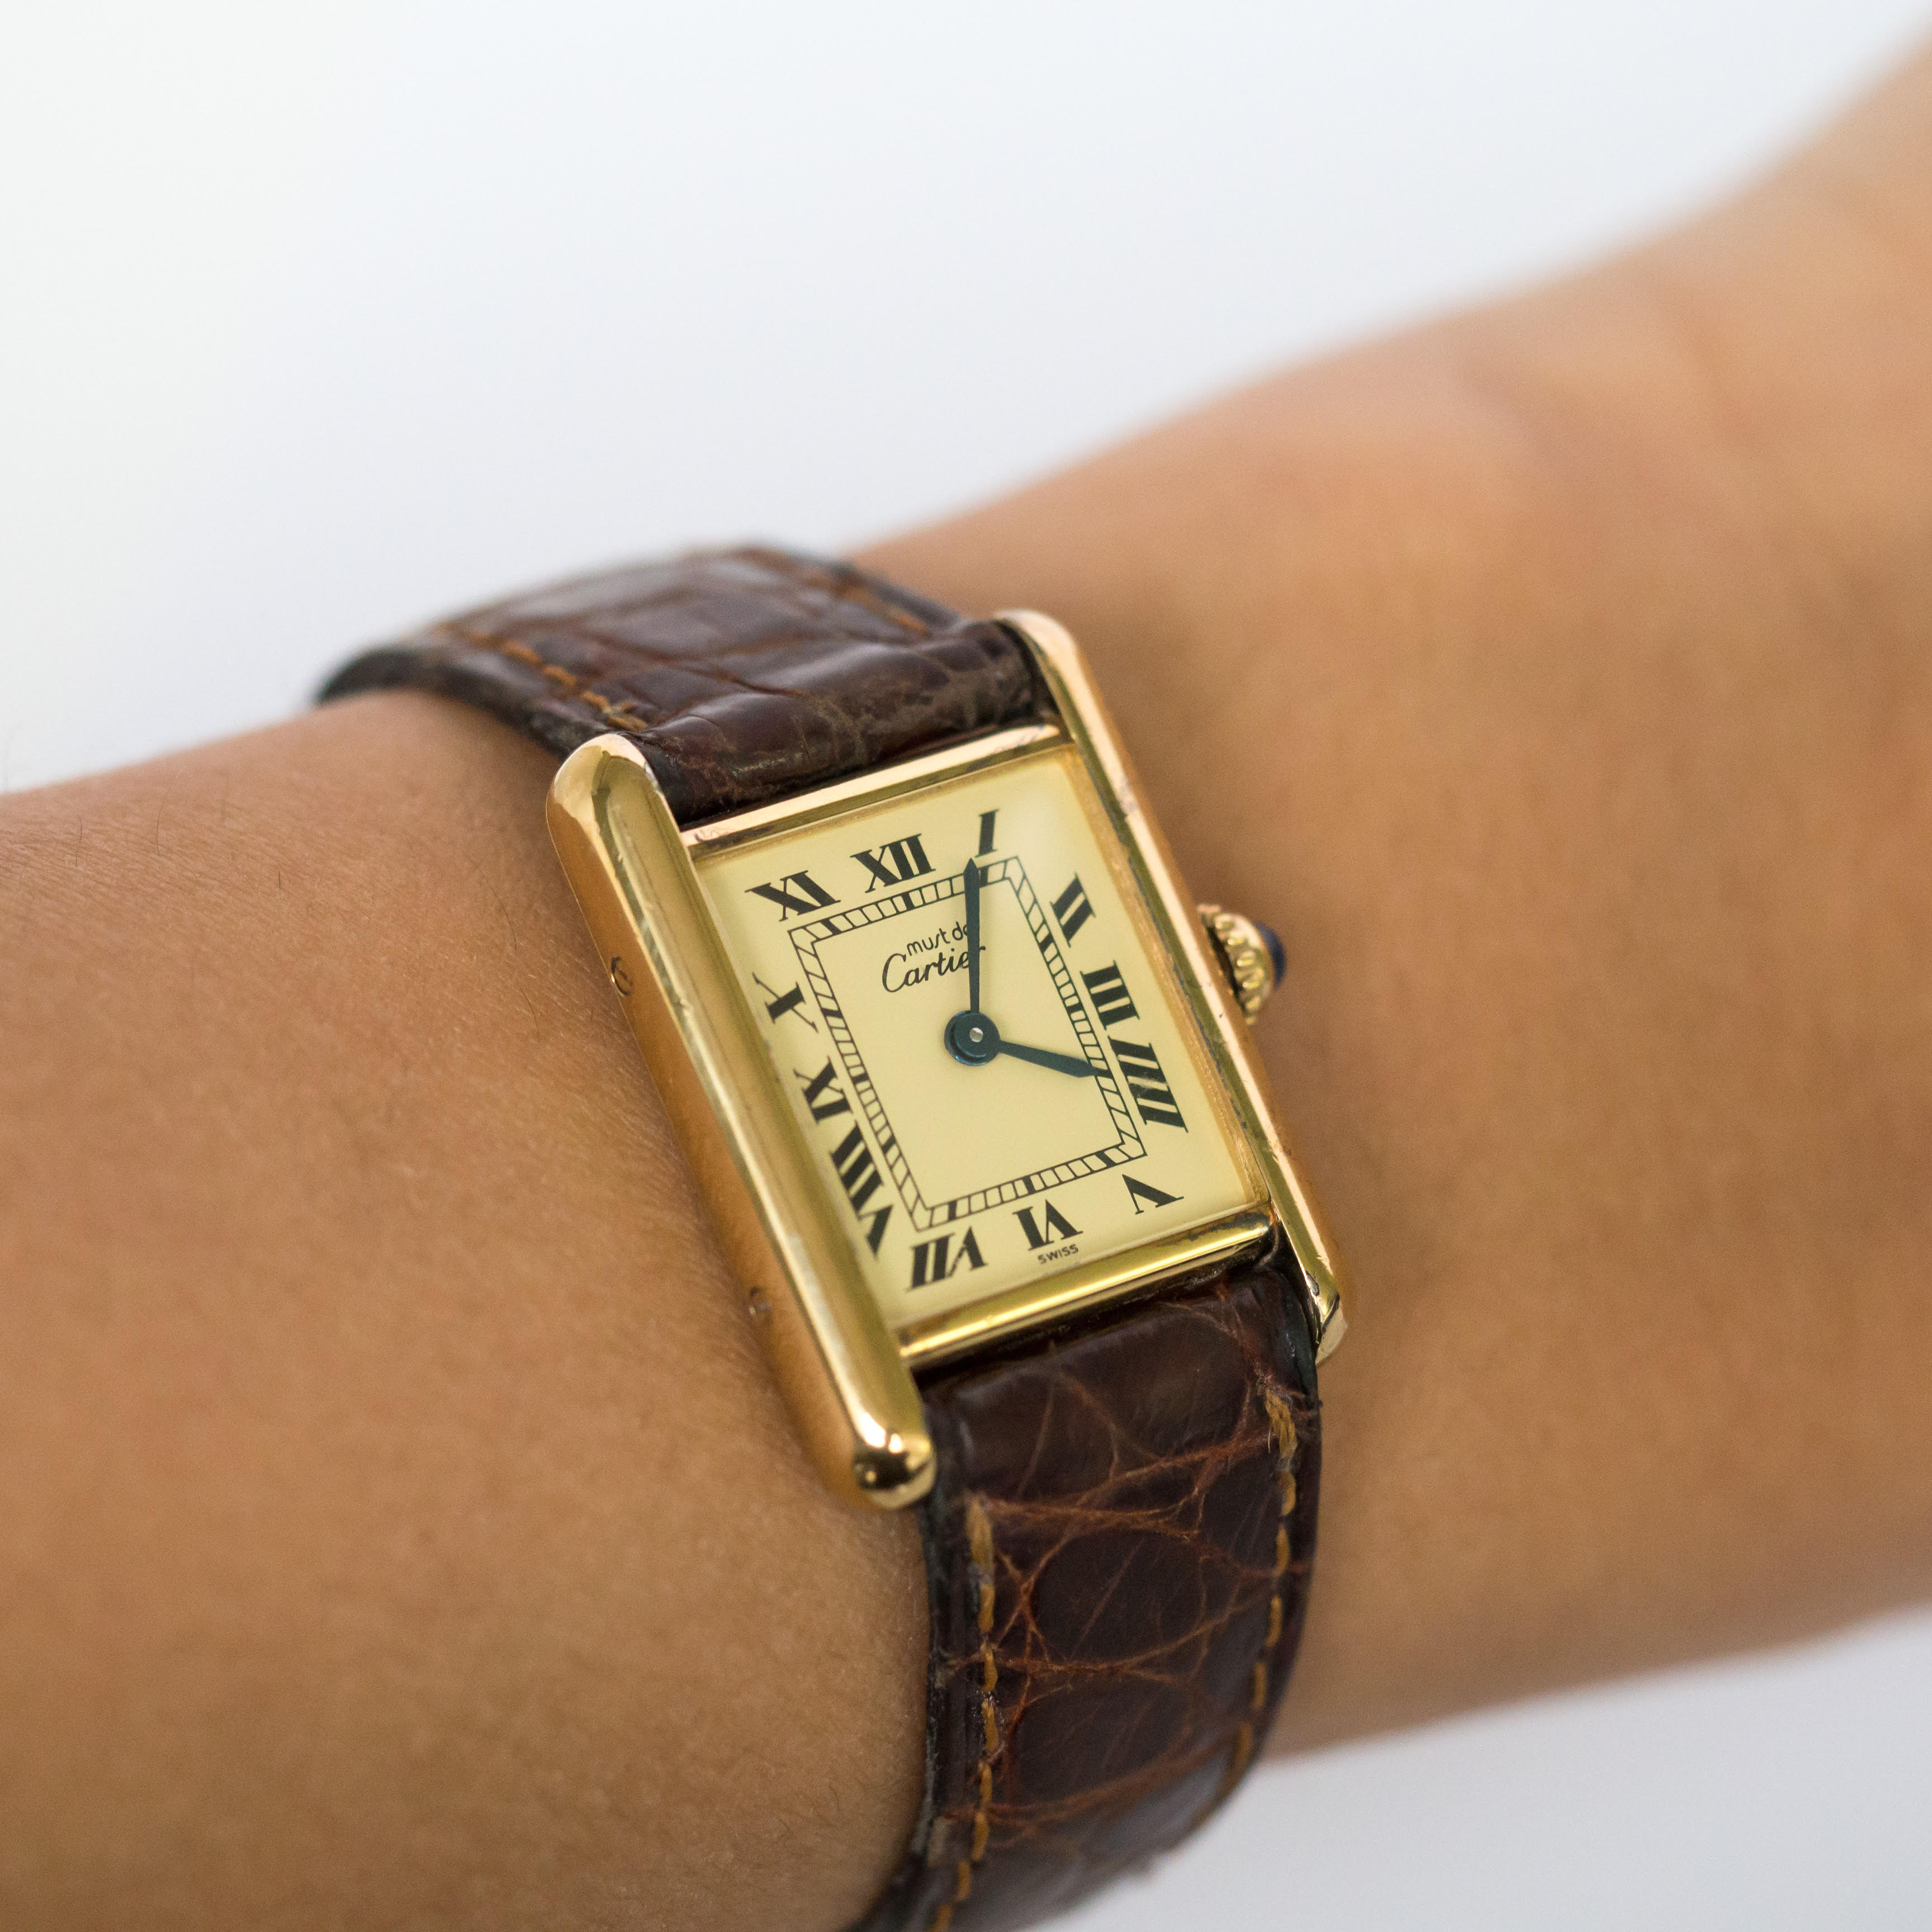 Vermeil Cartier Watch - The Verma Group